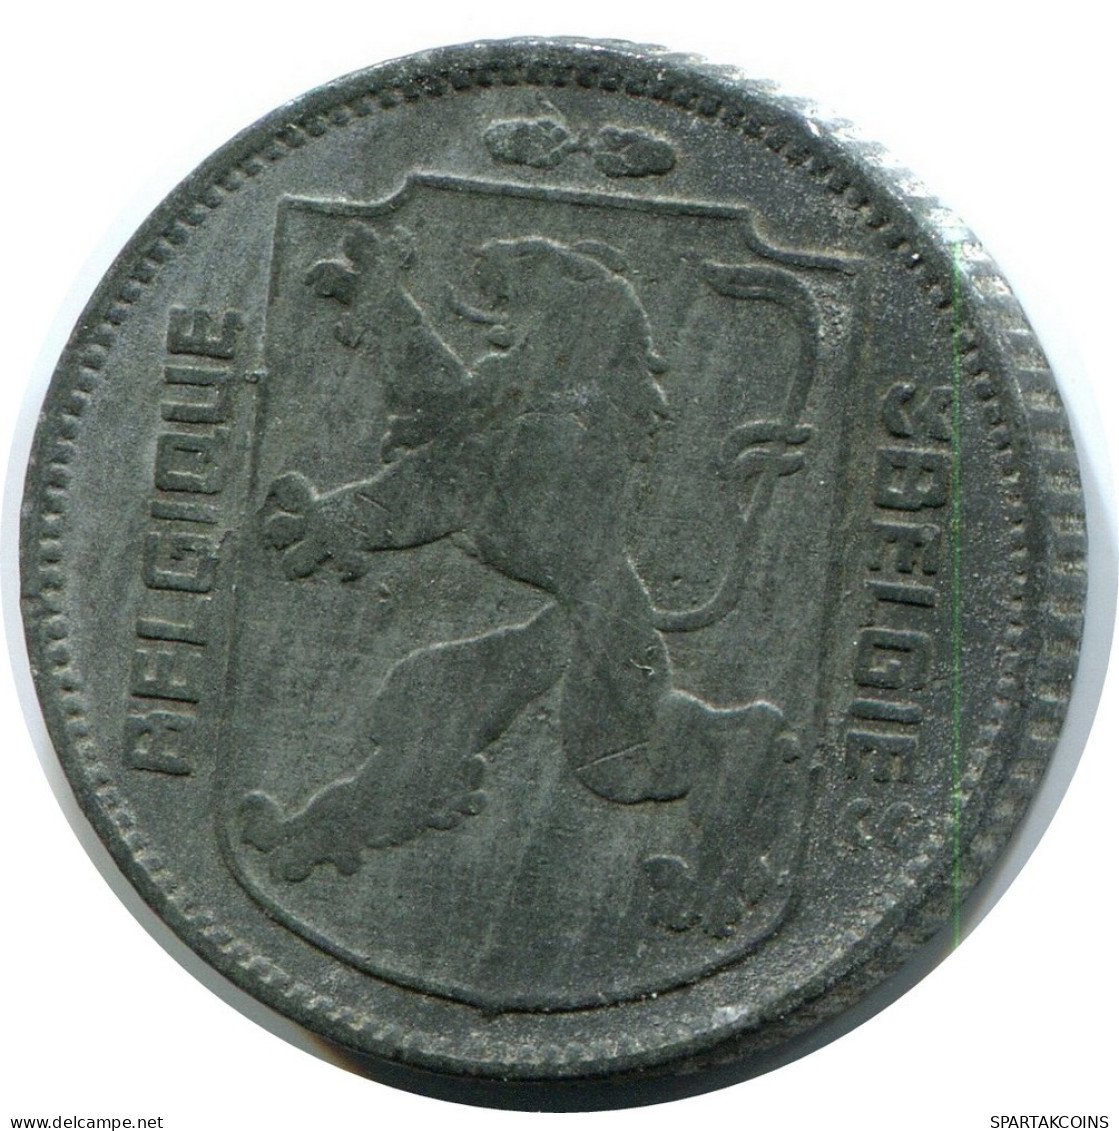 1 FRANC 1944 BELGIQUE-BELGIE BÉLGICA BELGIUM Moneda #AW915.E.A - 1 Frank